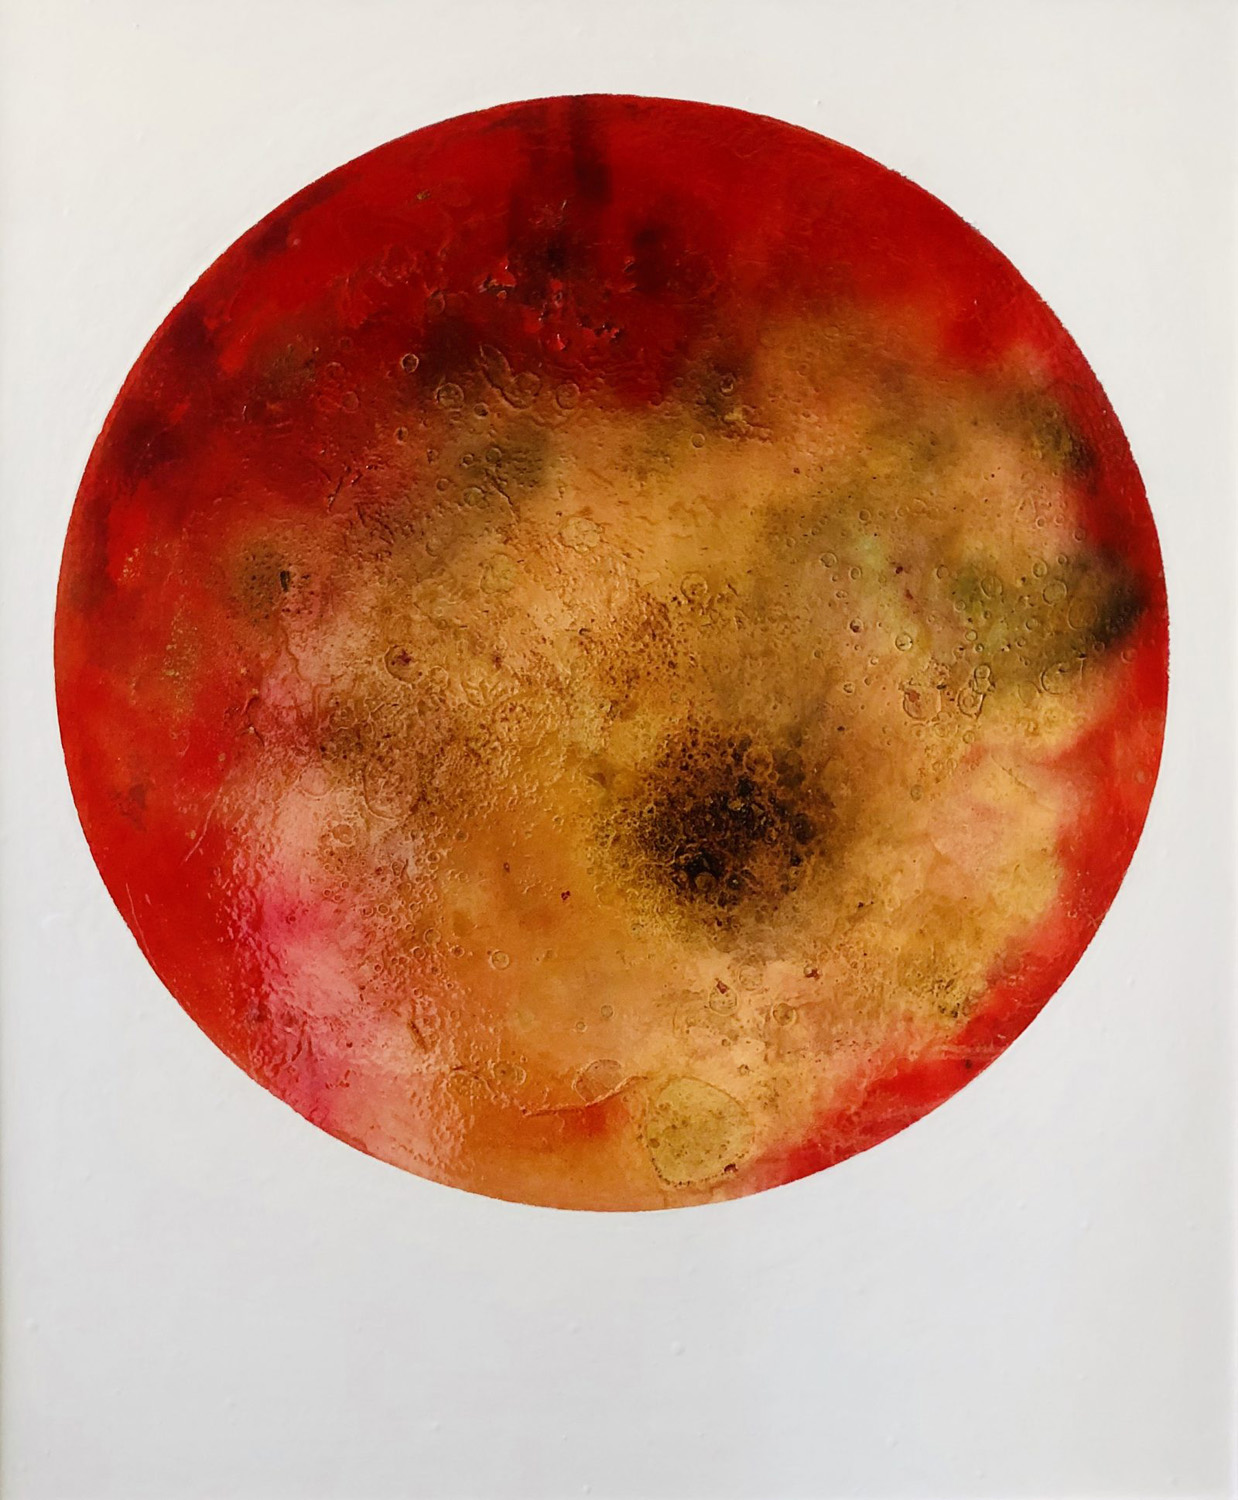 Red Planet by Paul Van Hoeydonck